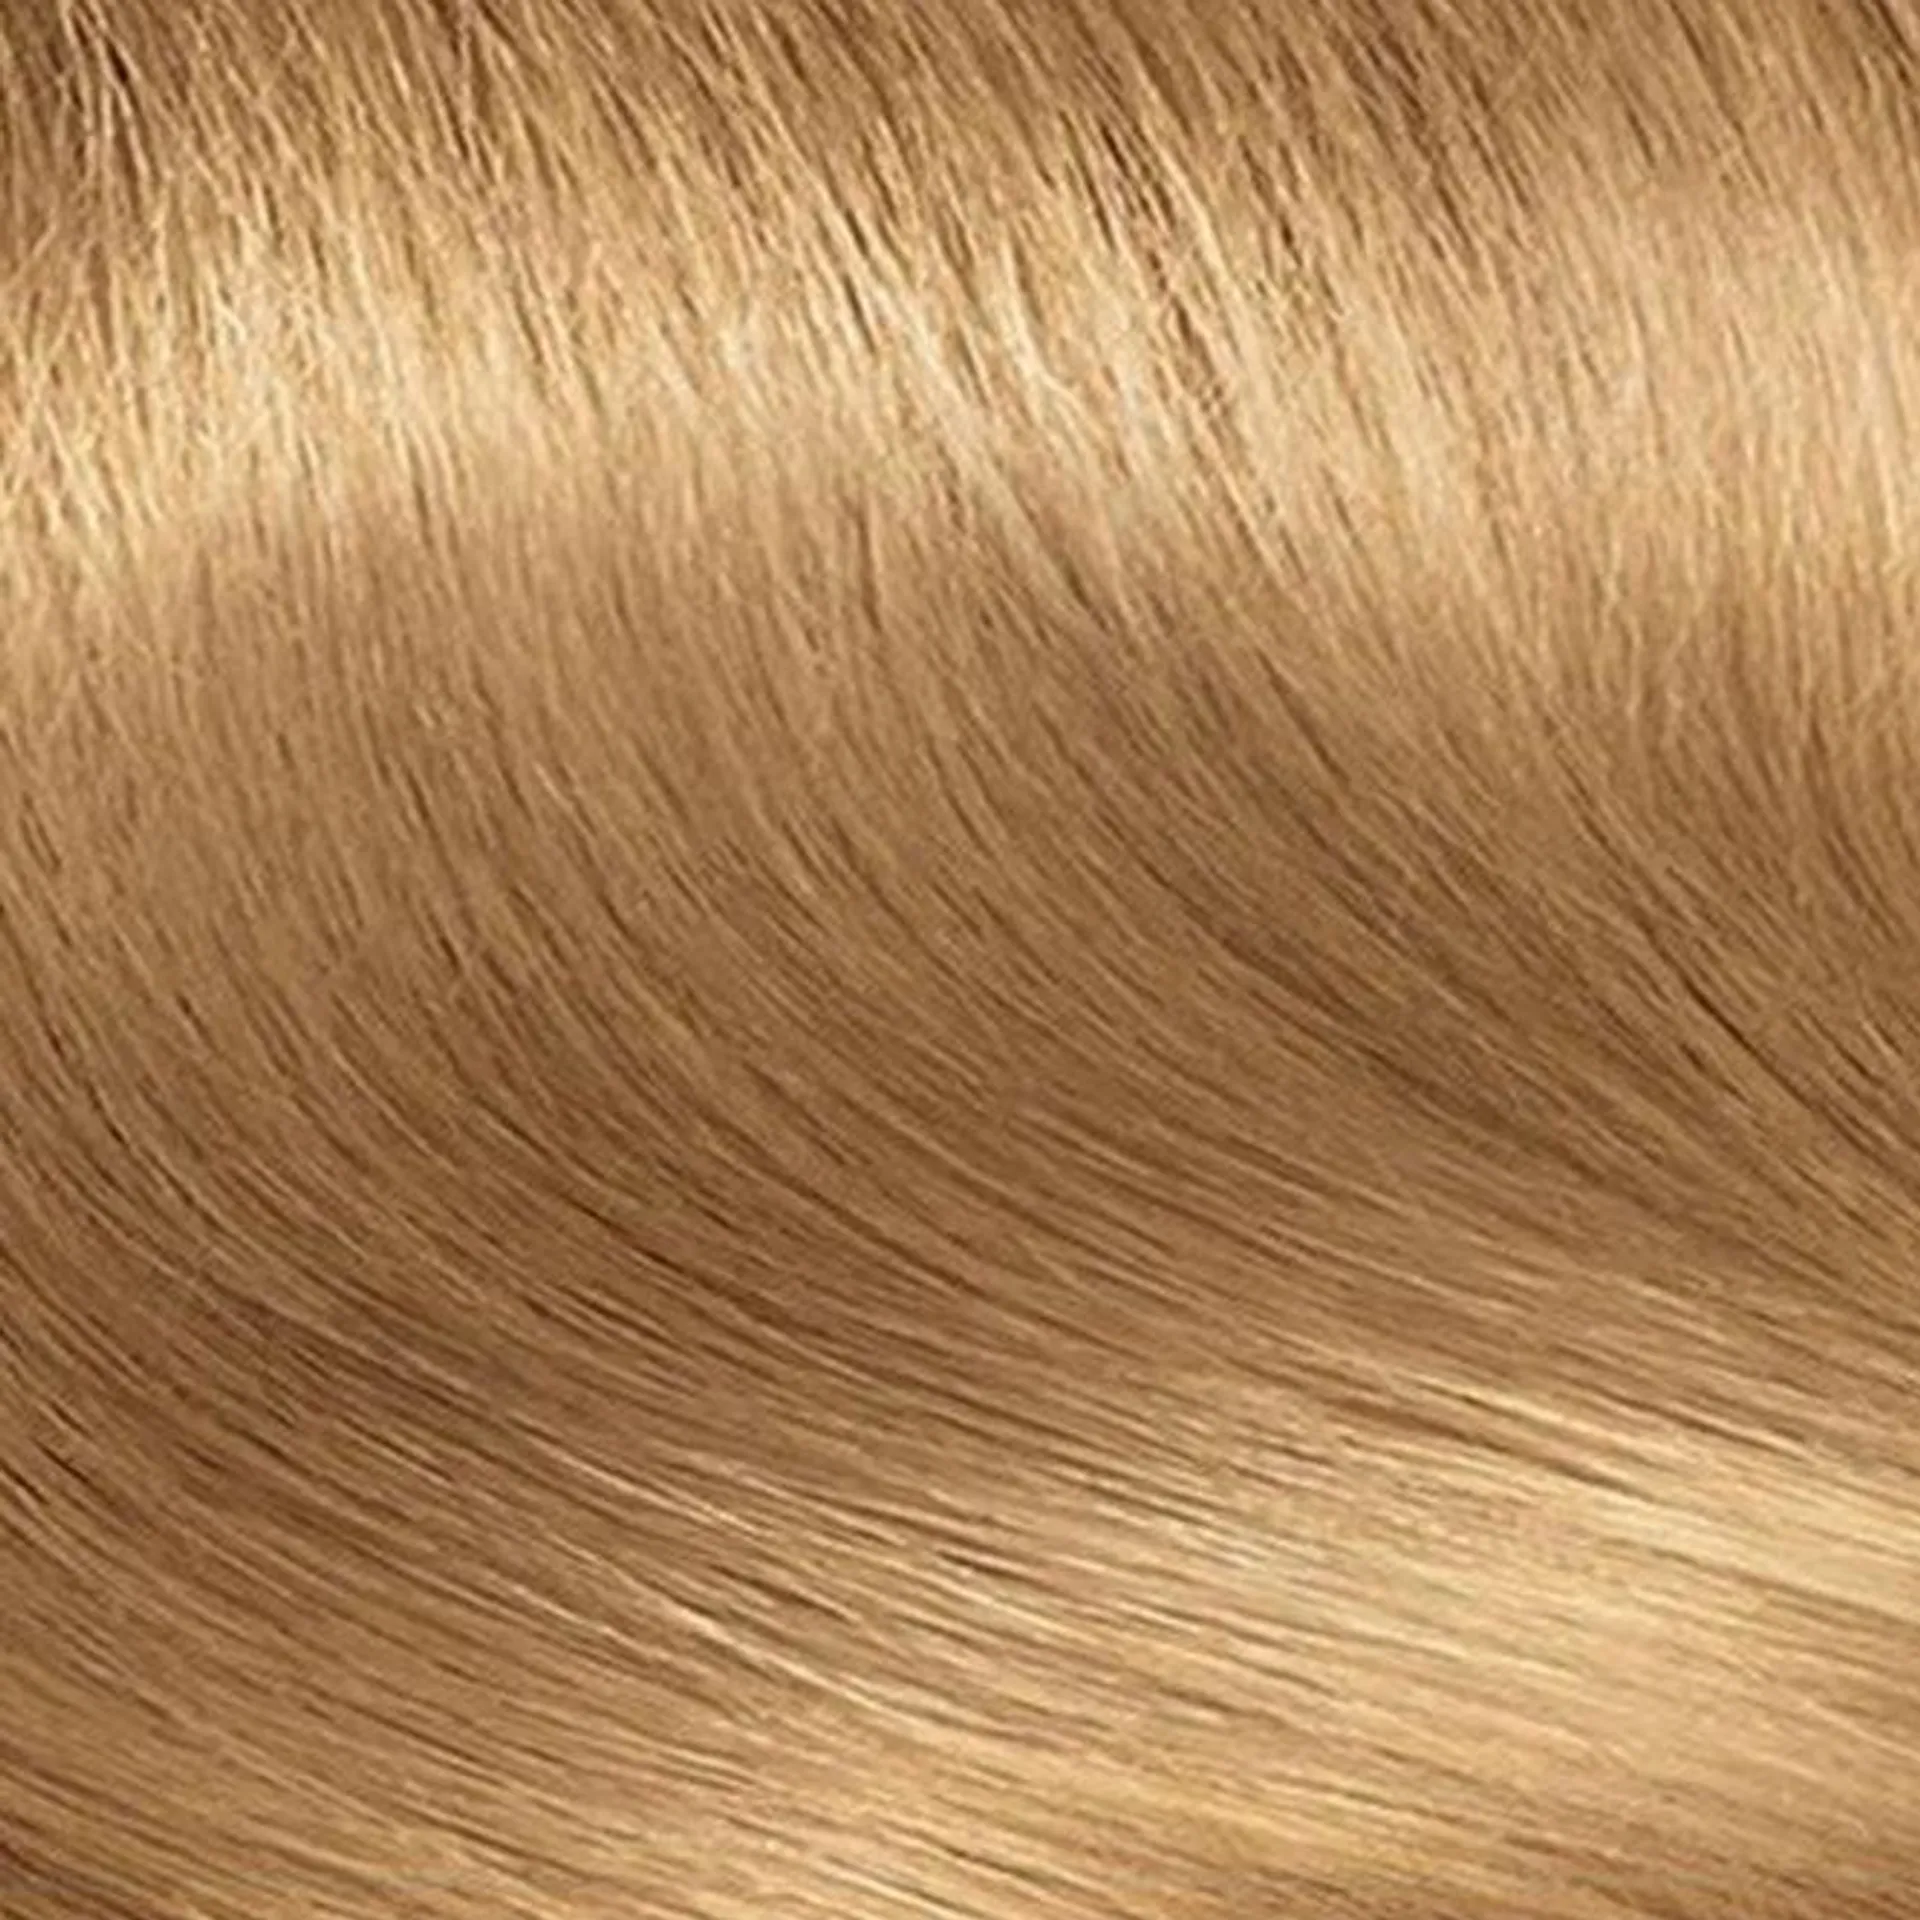 Clairol Nice'n'Easy Permanent Hair Dye - Medium Blonde 8